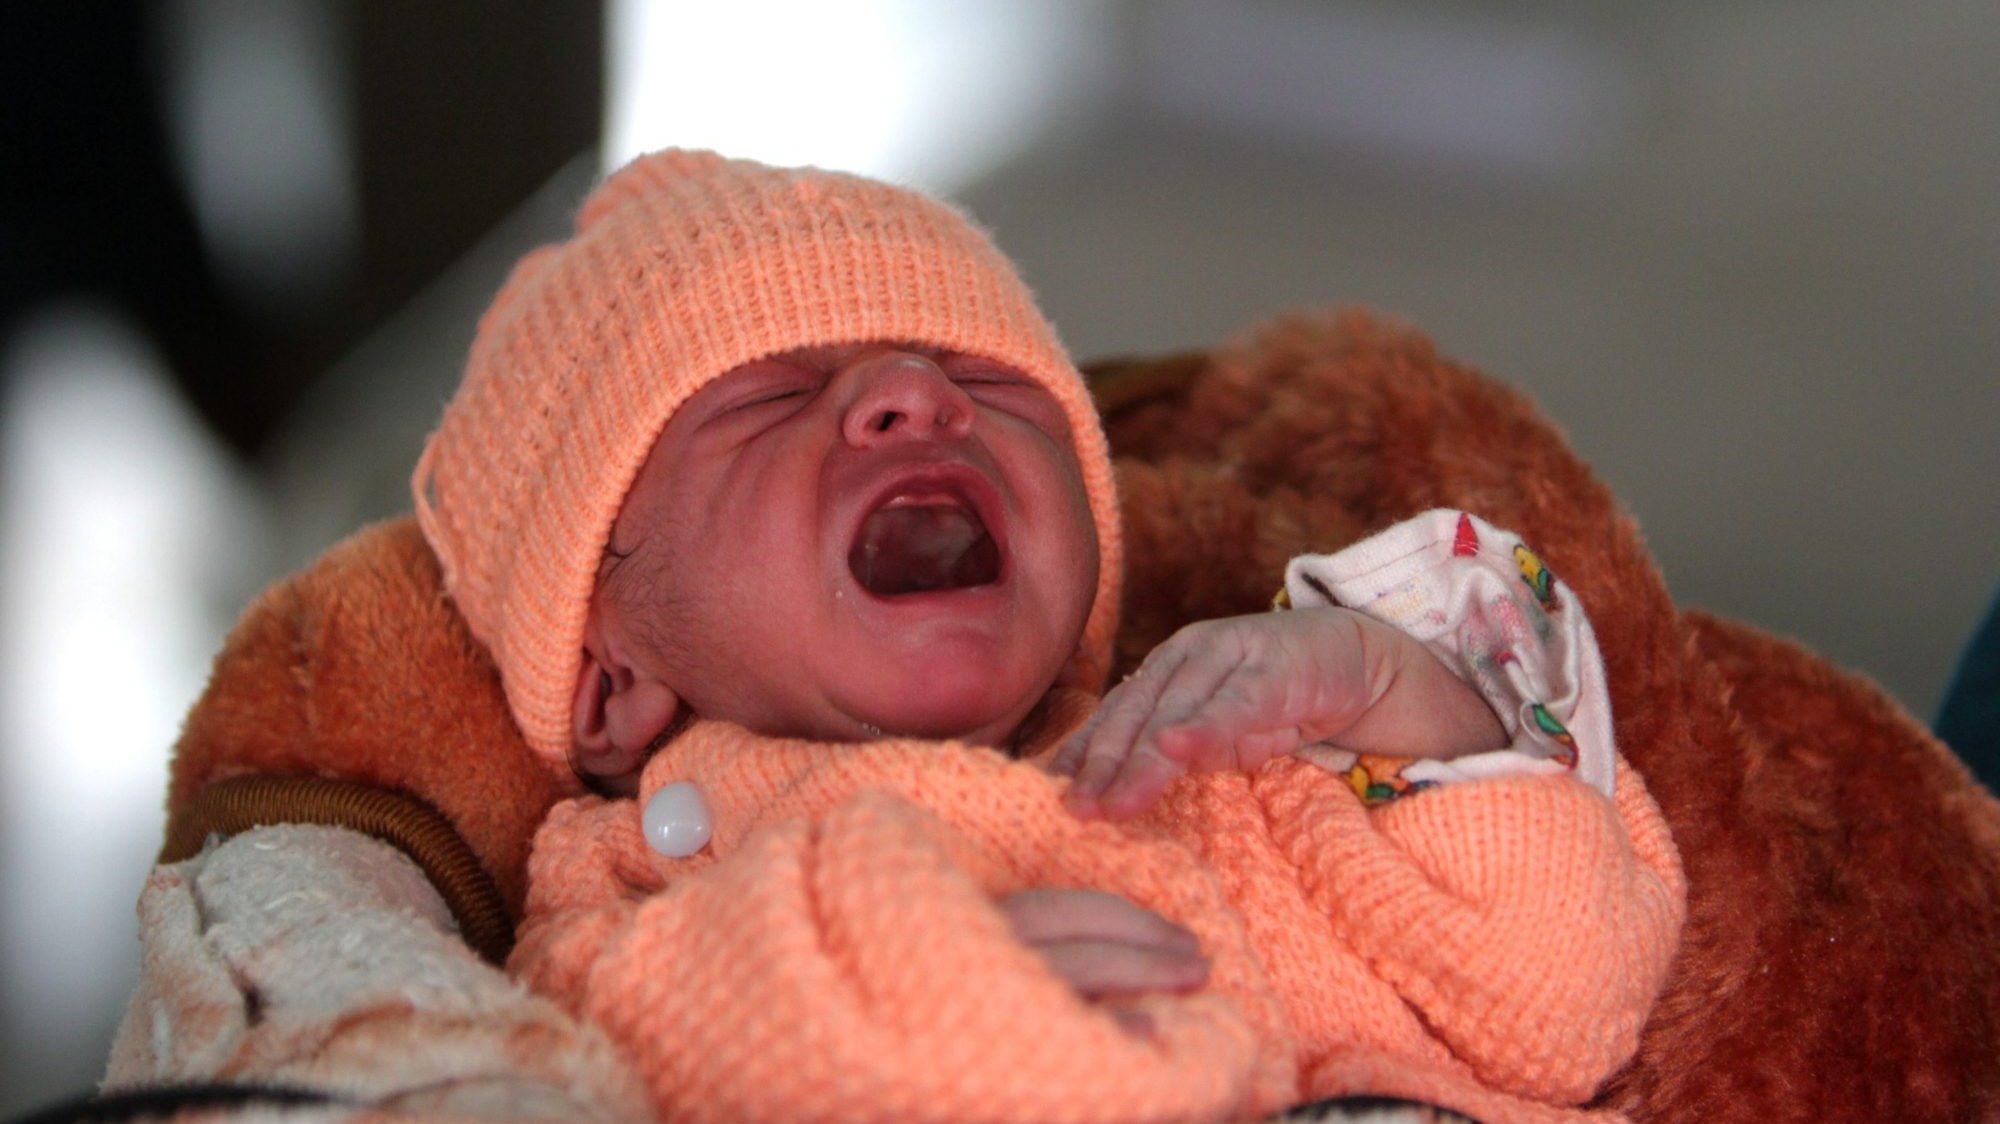 Os estudos indicam que poderiam ser evitados 566.000 natimortos, assim como a morte de 476.000 casos por óbito neonatal (até 28 dias após o parto)